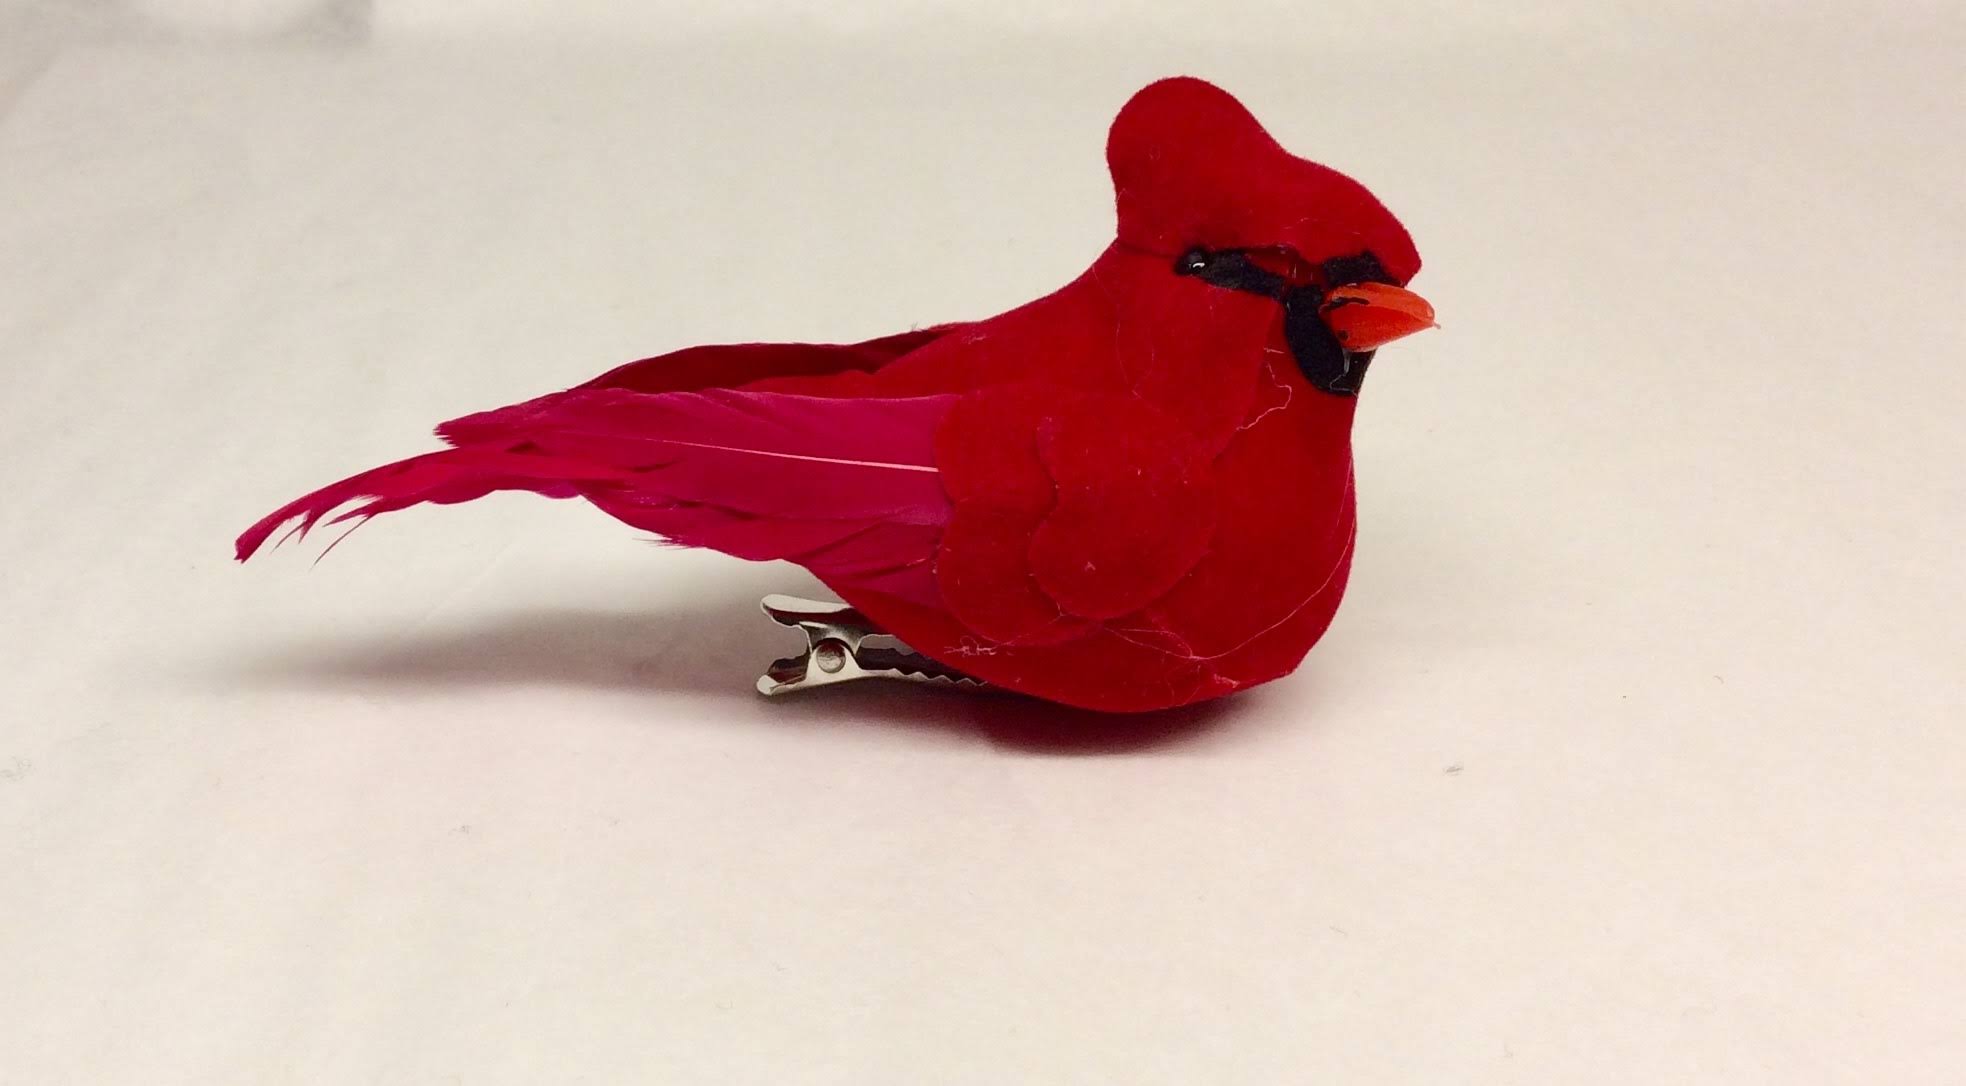 Small Cardinal Bird Clip - Red, 3.5"